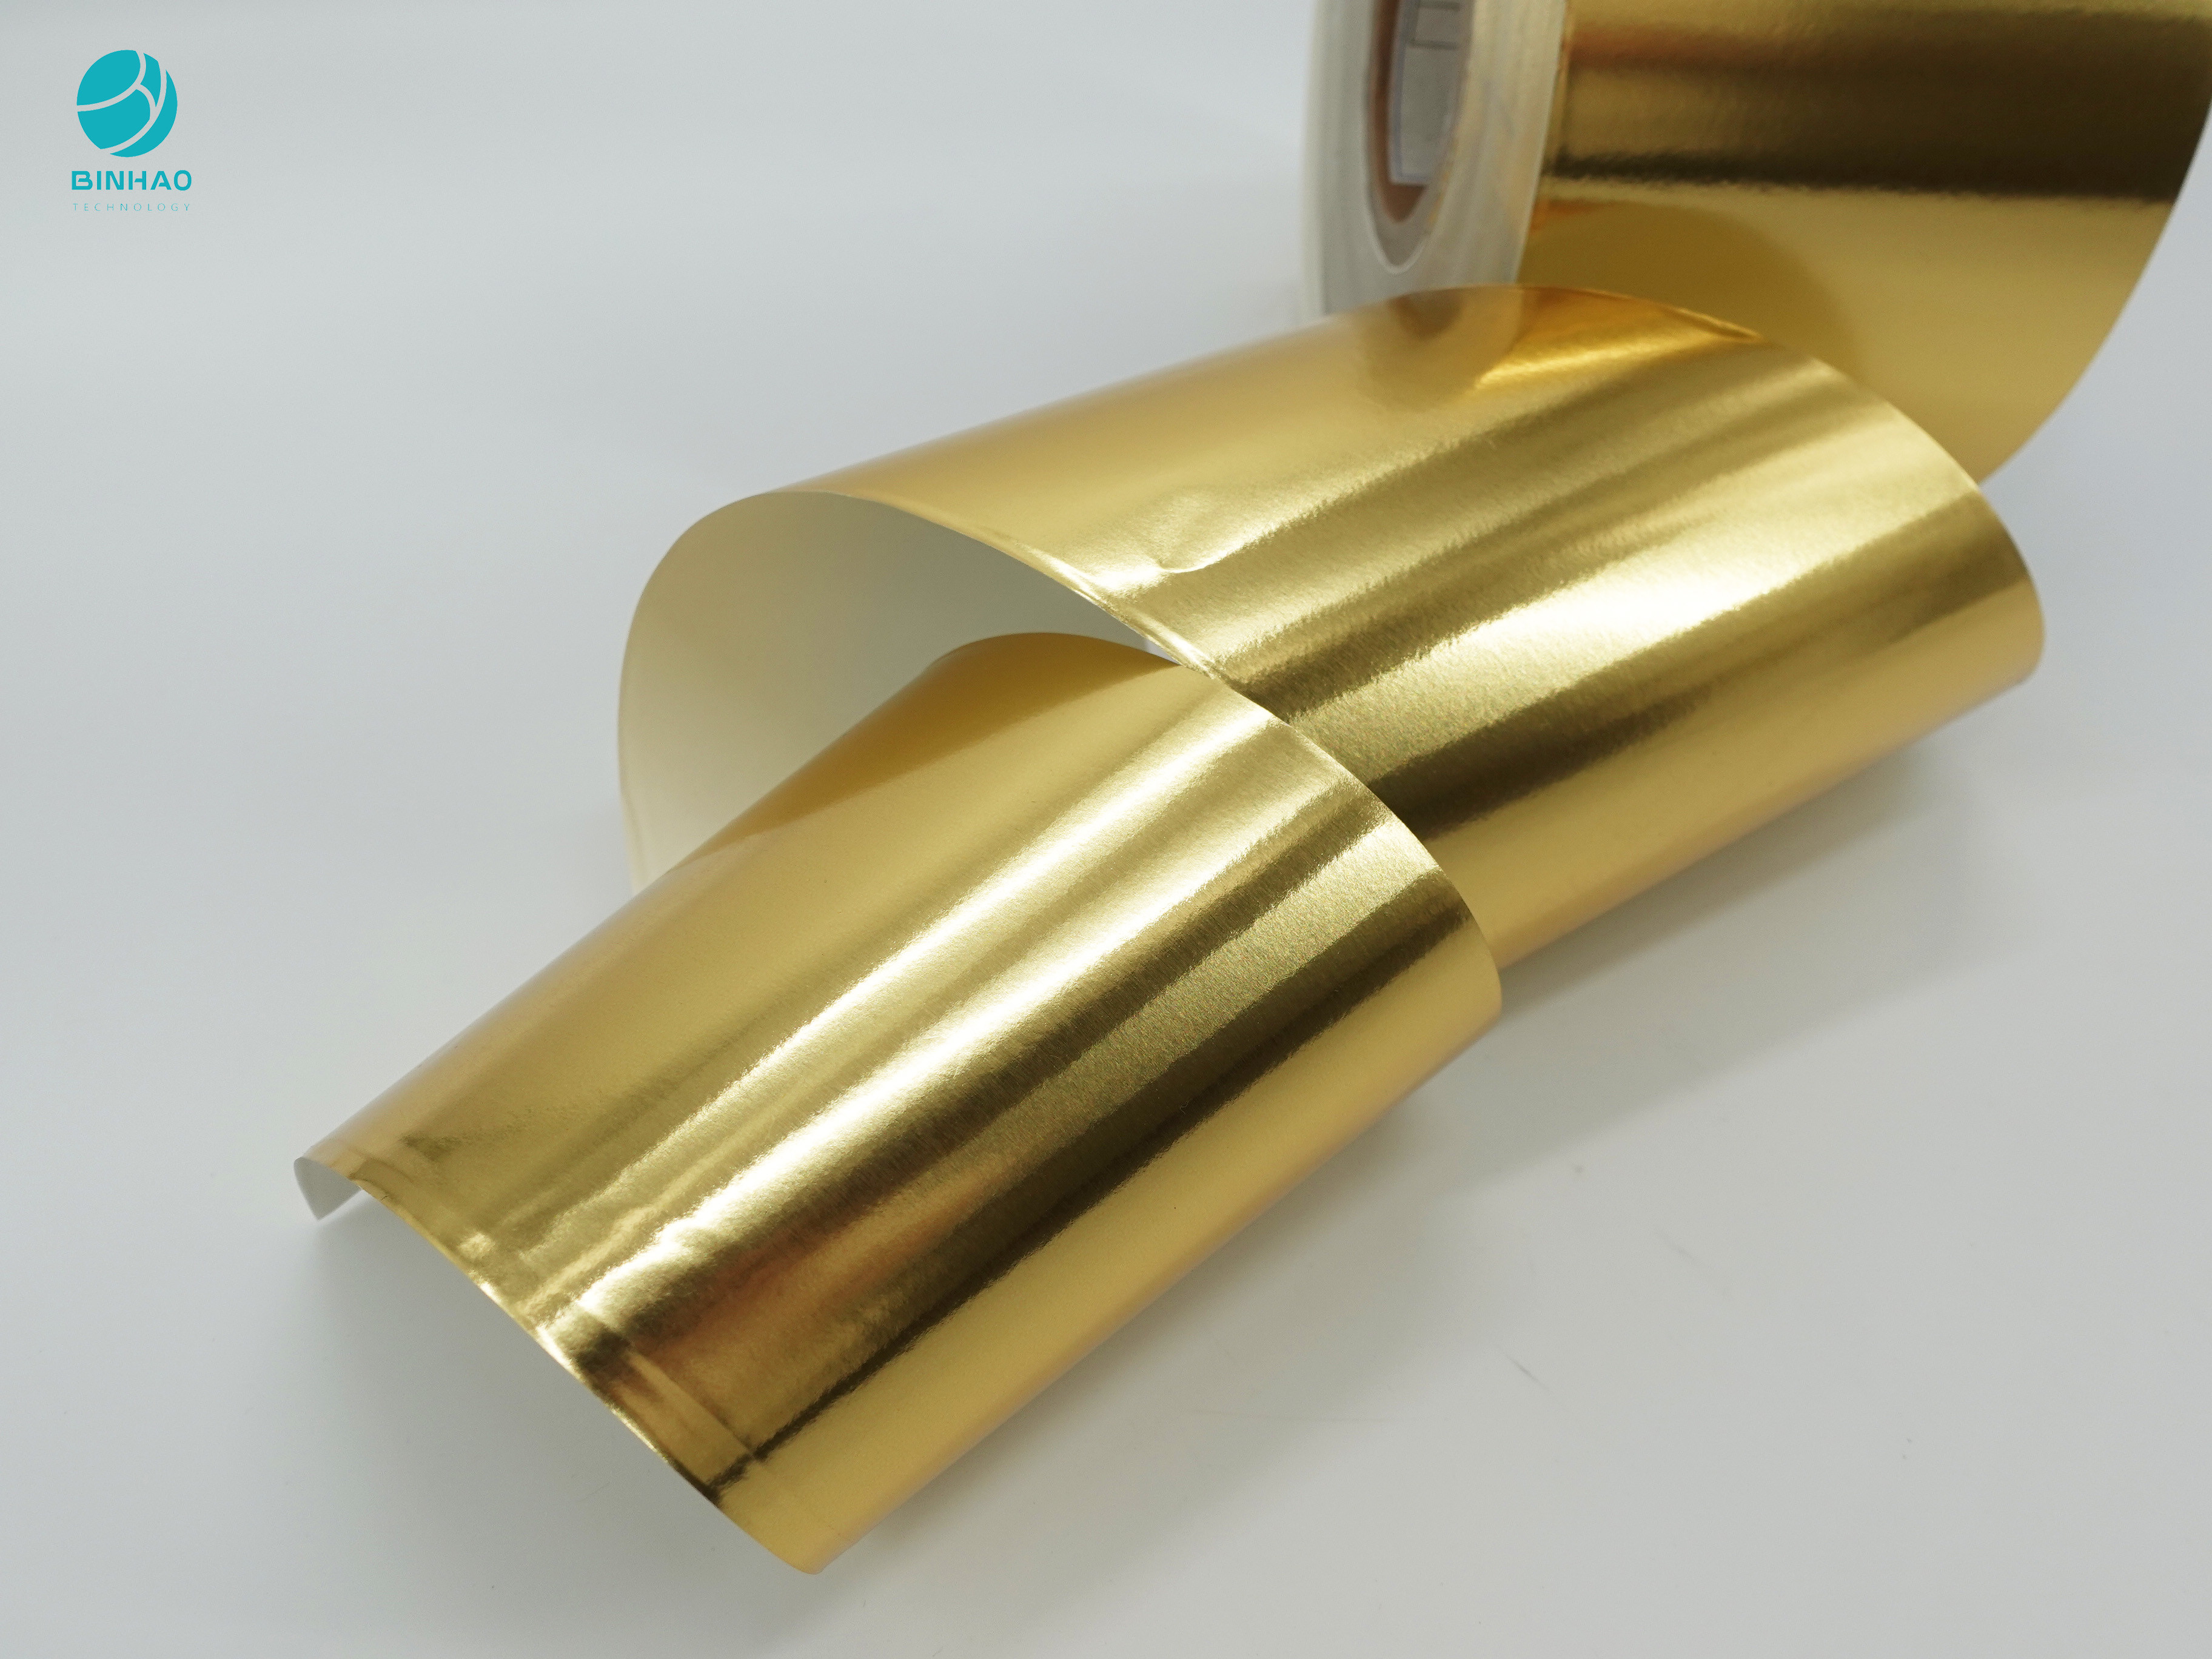 Goldenes glattes zusammengesetztes 114mm Aluminiumfolie-Papier für Zigaretten-innere Verpackung